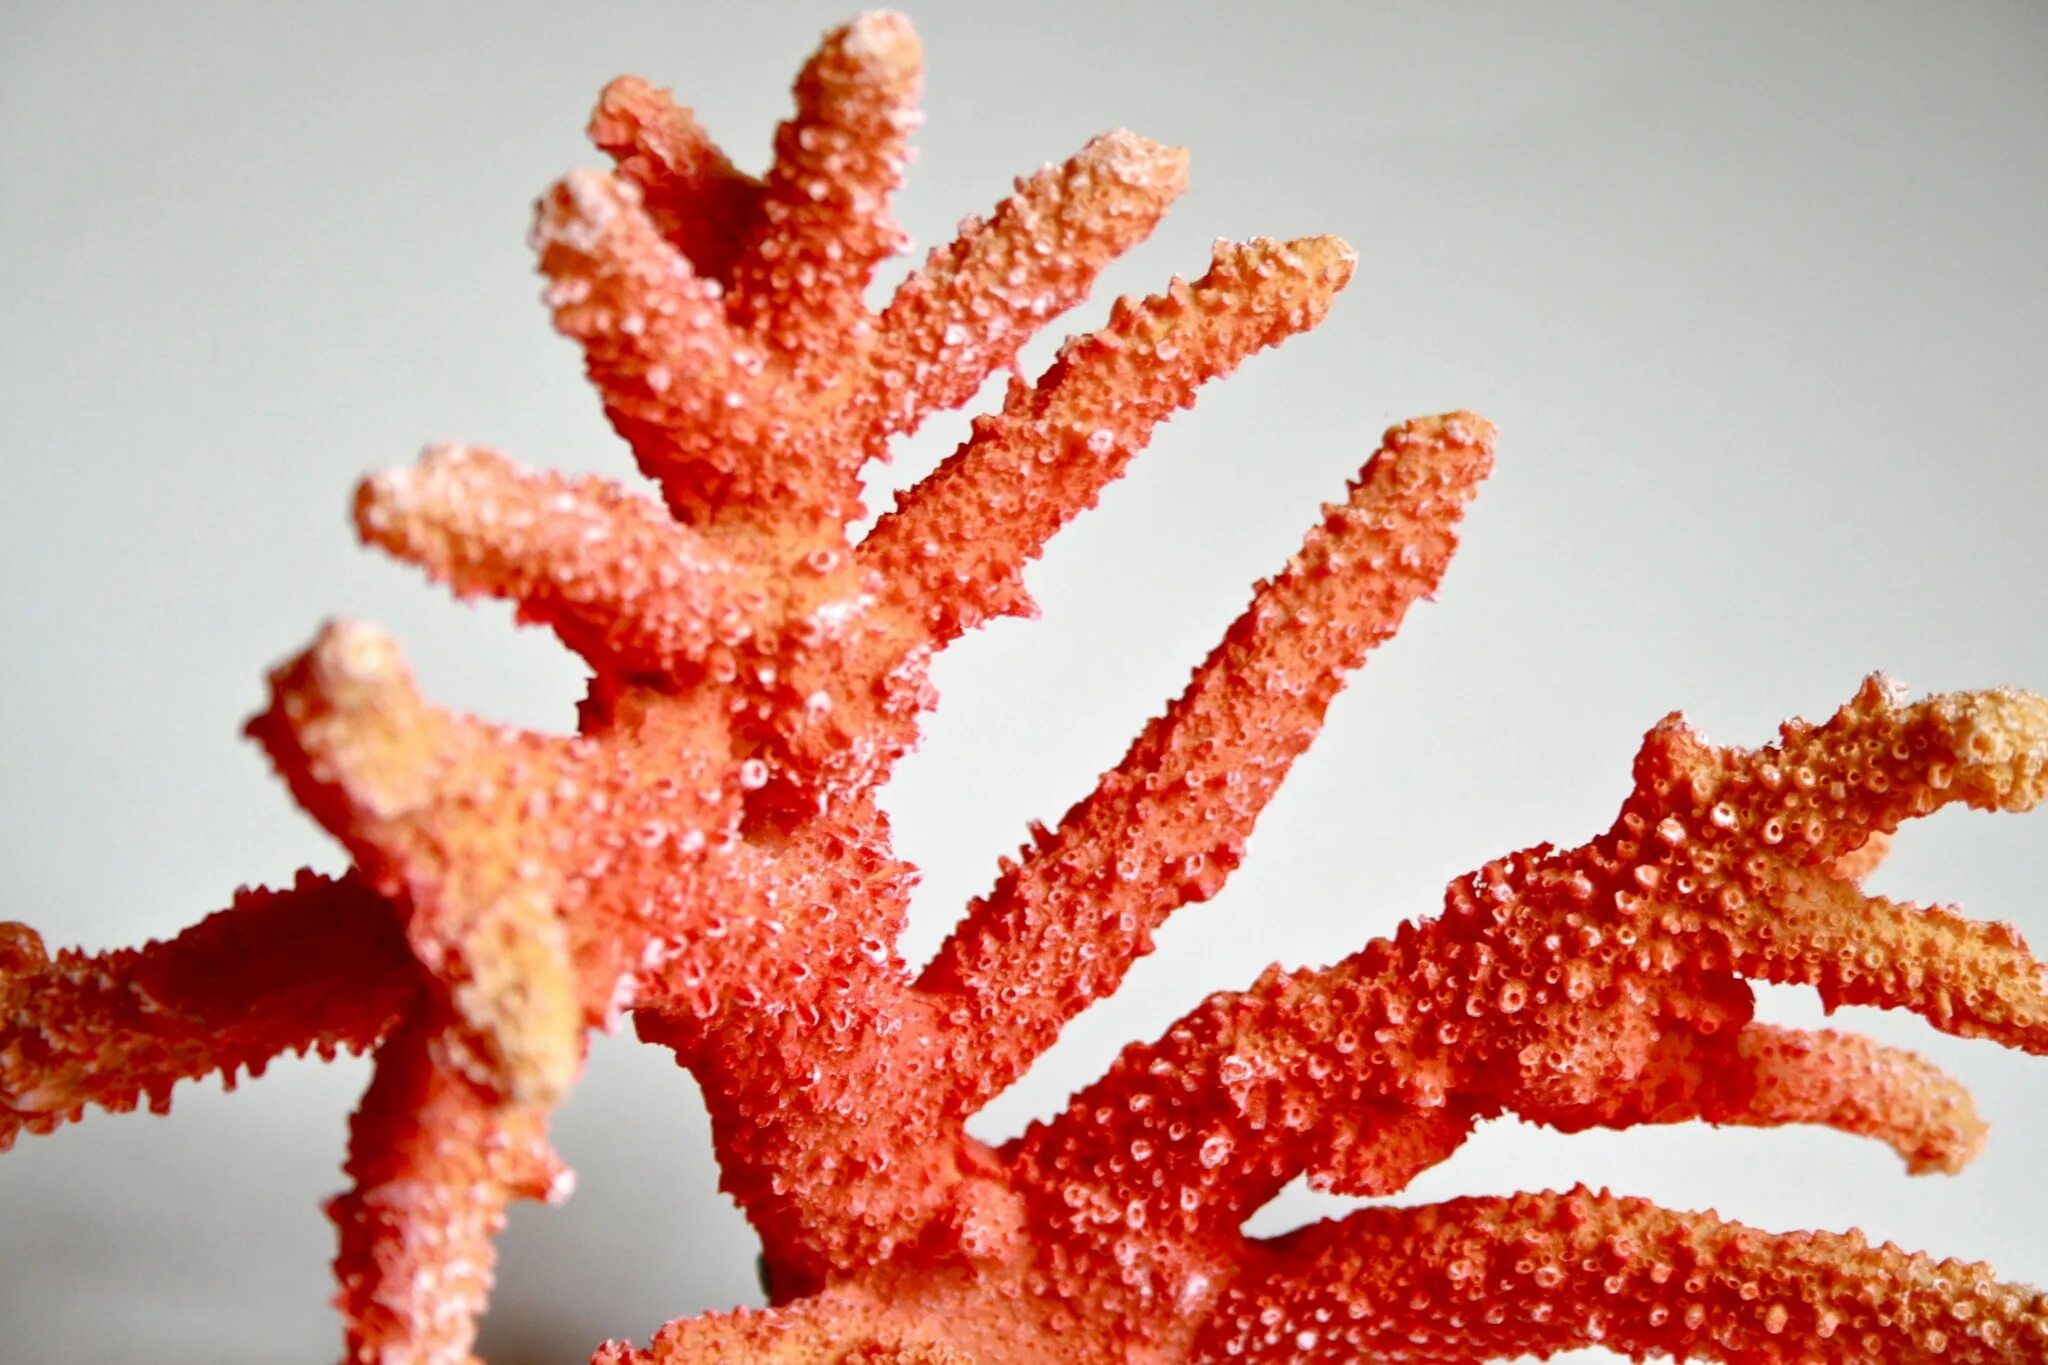 El coral. Коралл Секондо КОЛОРО. Красный коралл Кишечнополостные. Кустистый коралл. Арцискуро карбонетто коралл.